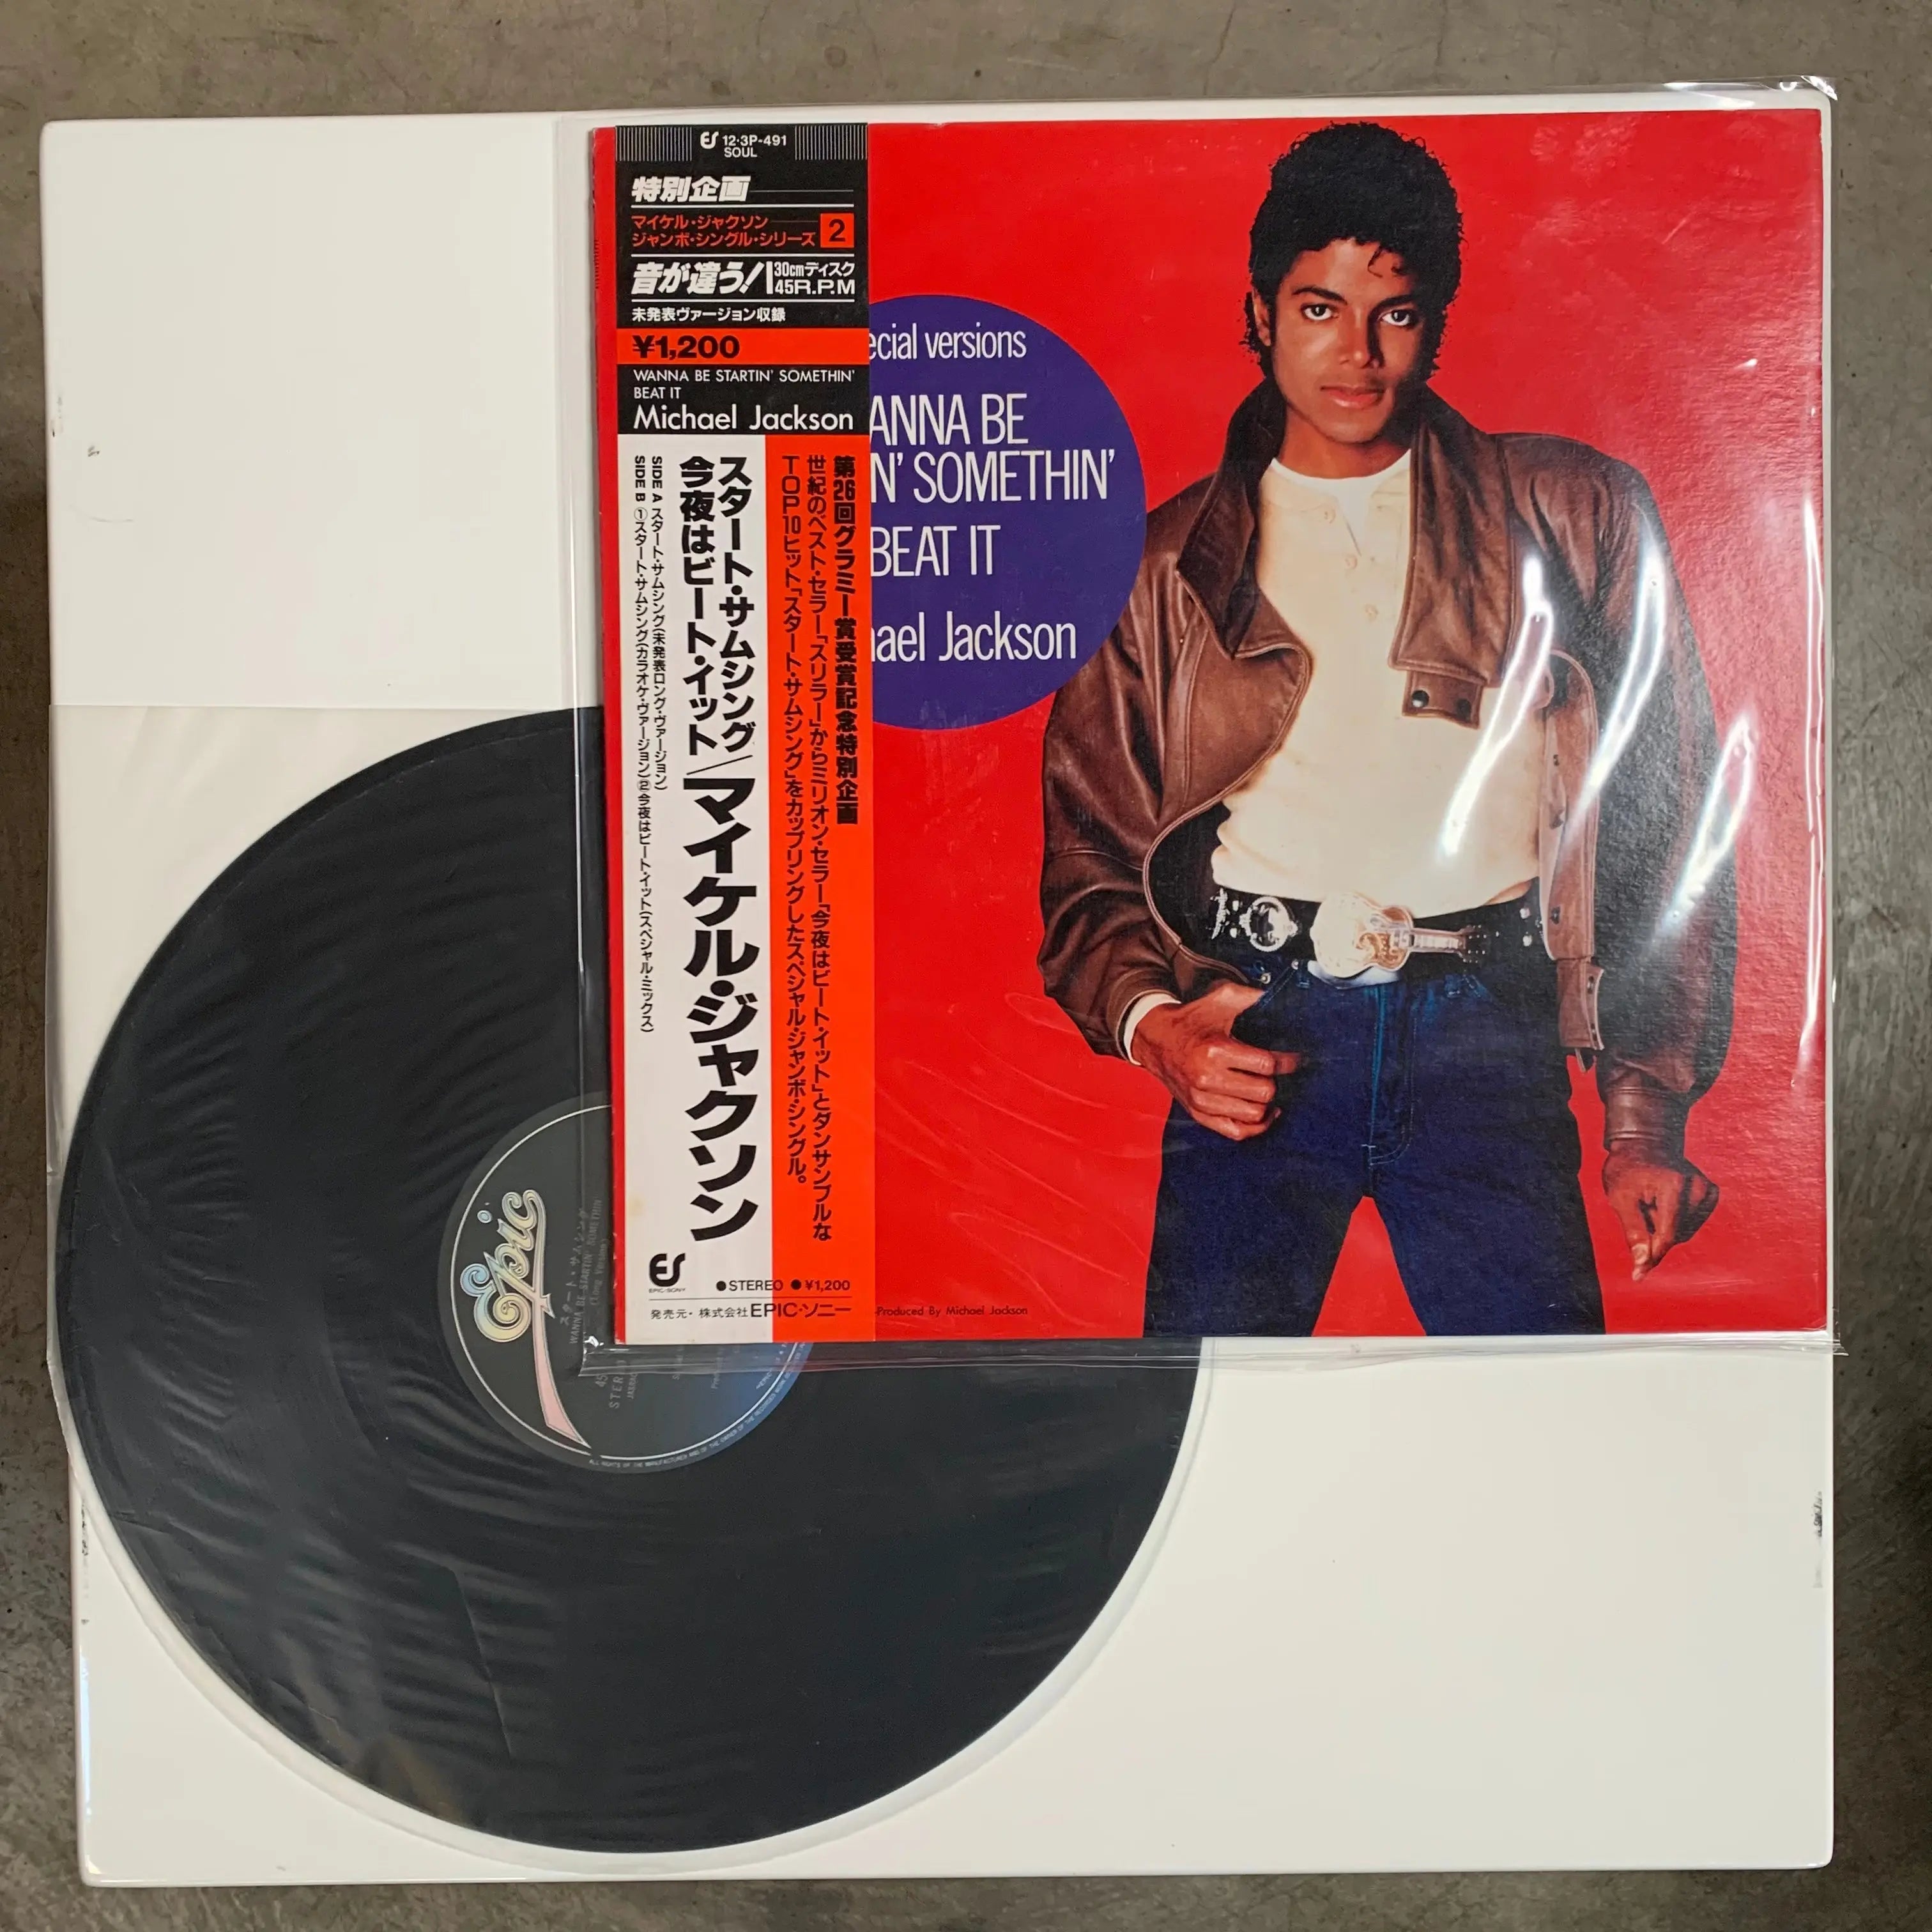 ビクトリー ジャクソンズ LPレコード「マイケルジャクソン」 - 洋楽